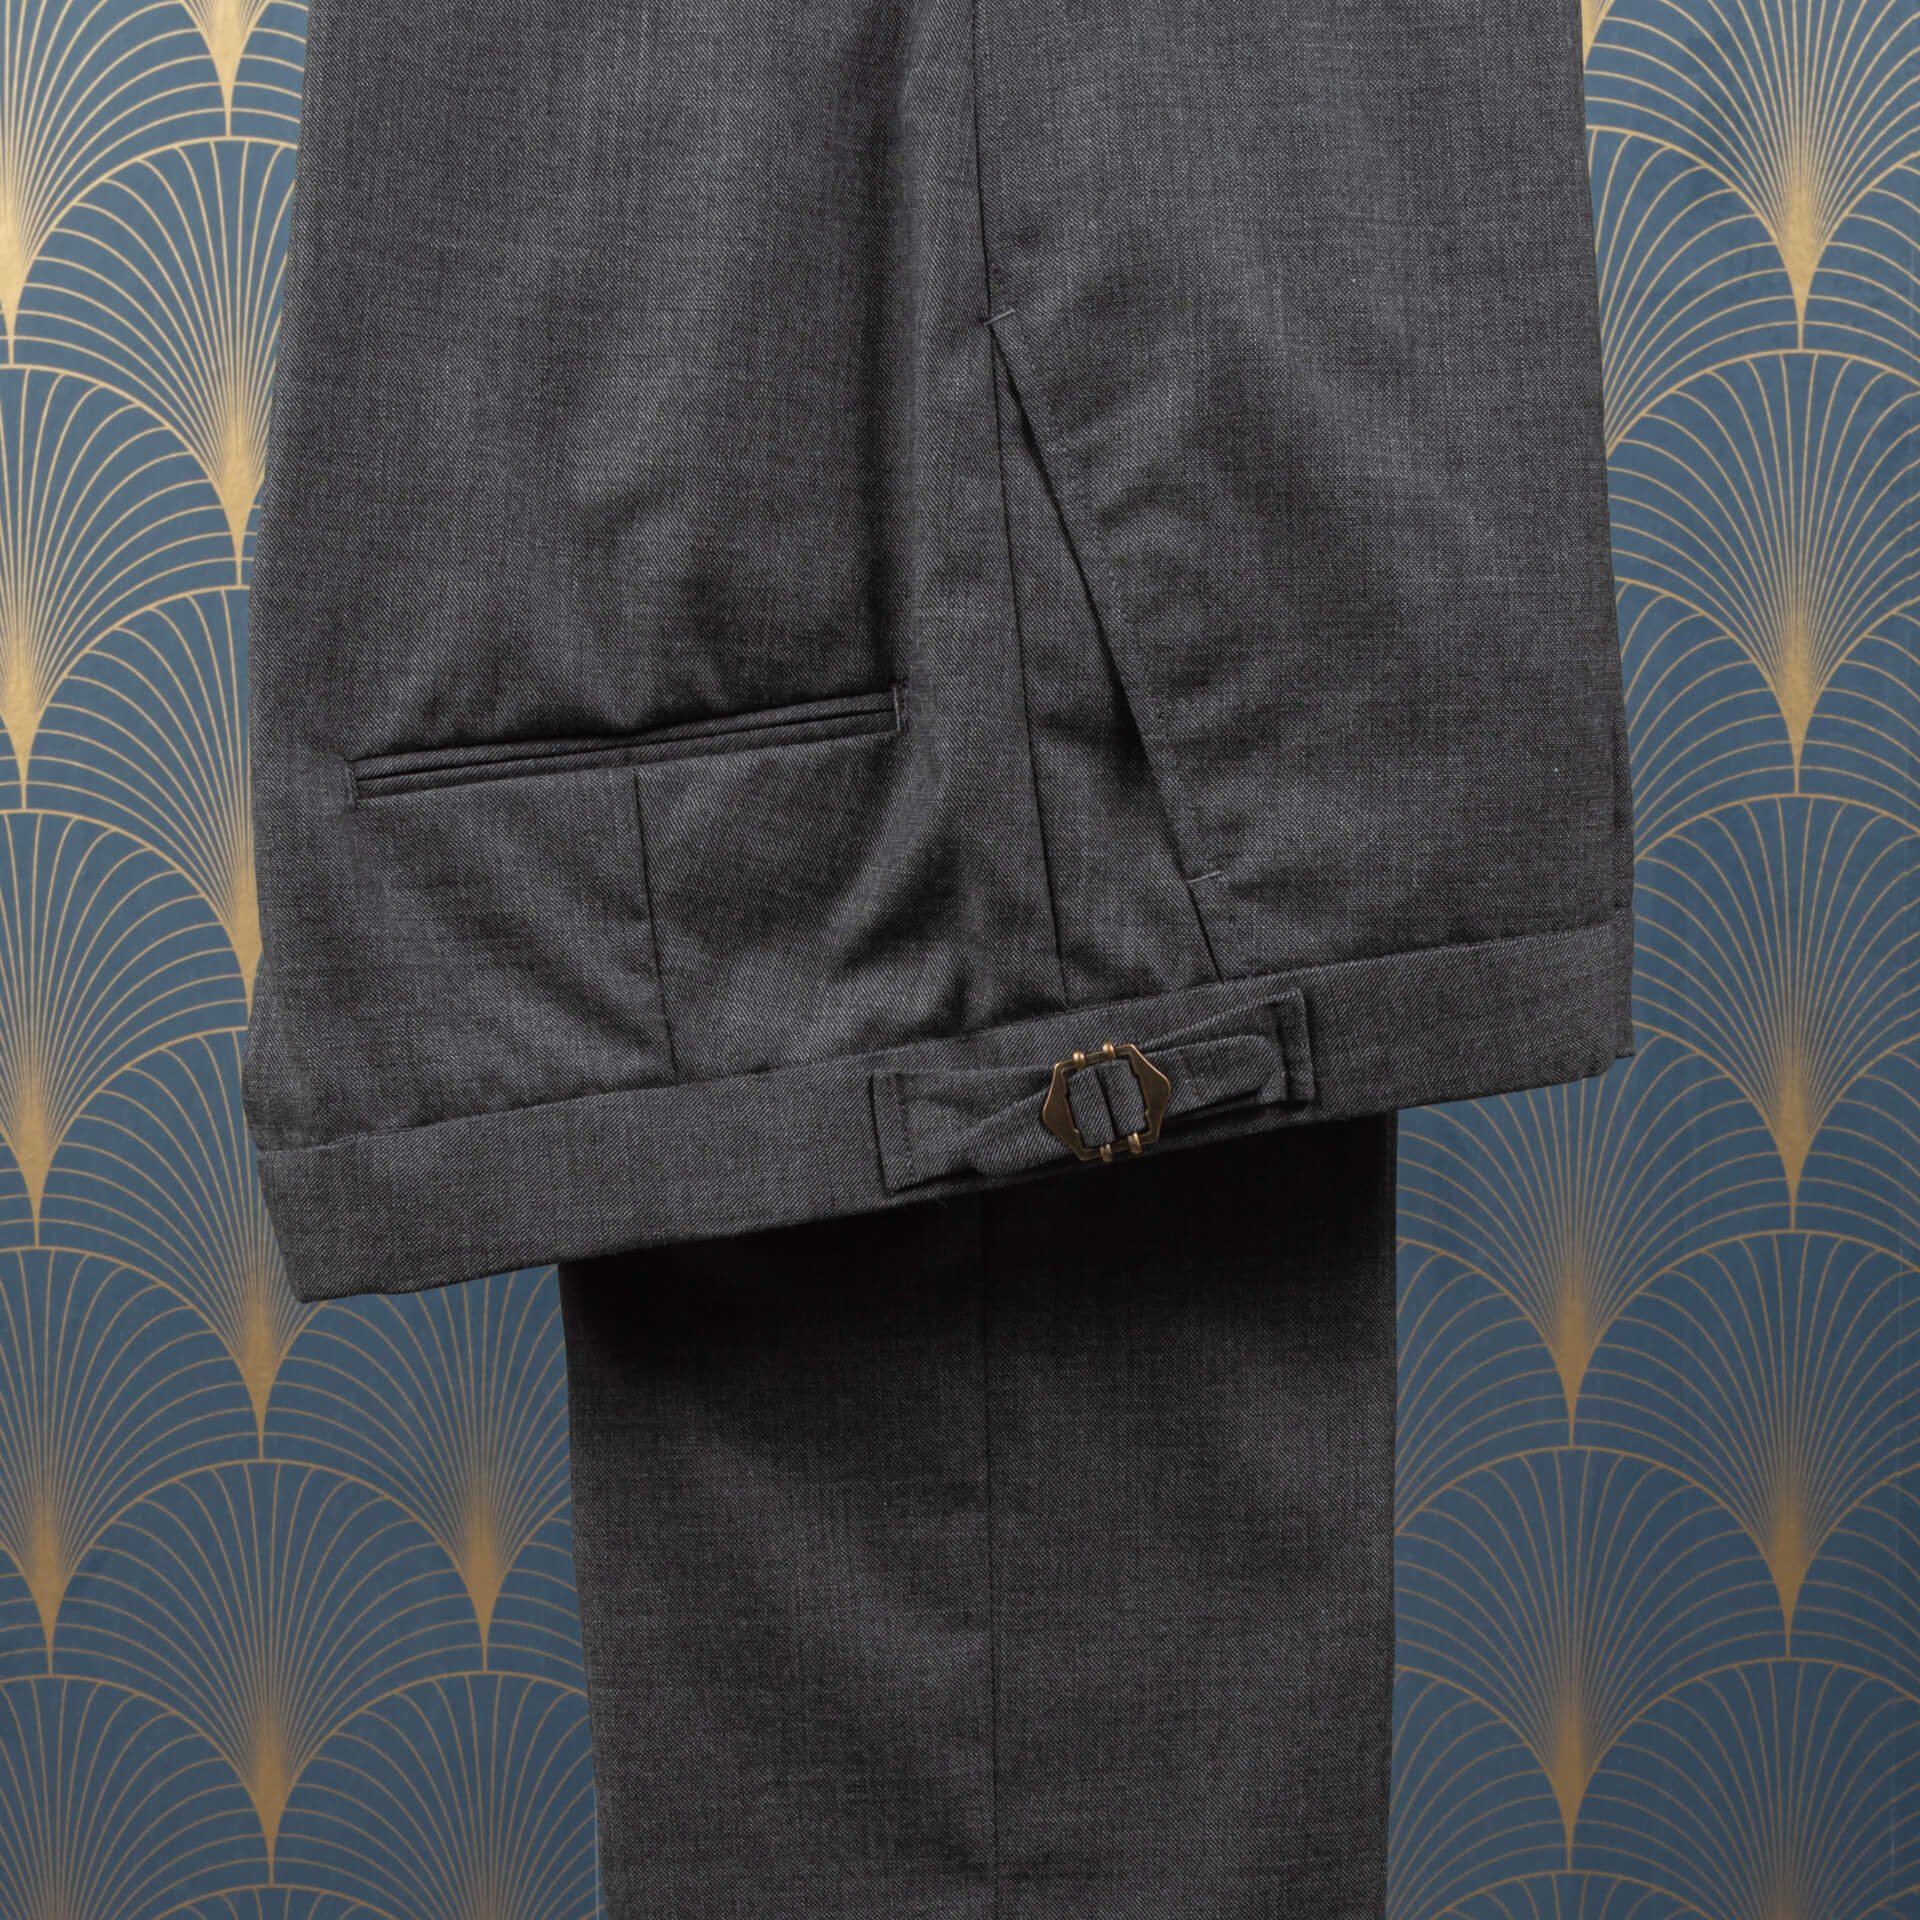 Broek zakken grijze sharkskin pantalon hangend op een kleerhanger